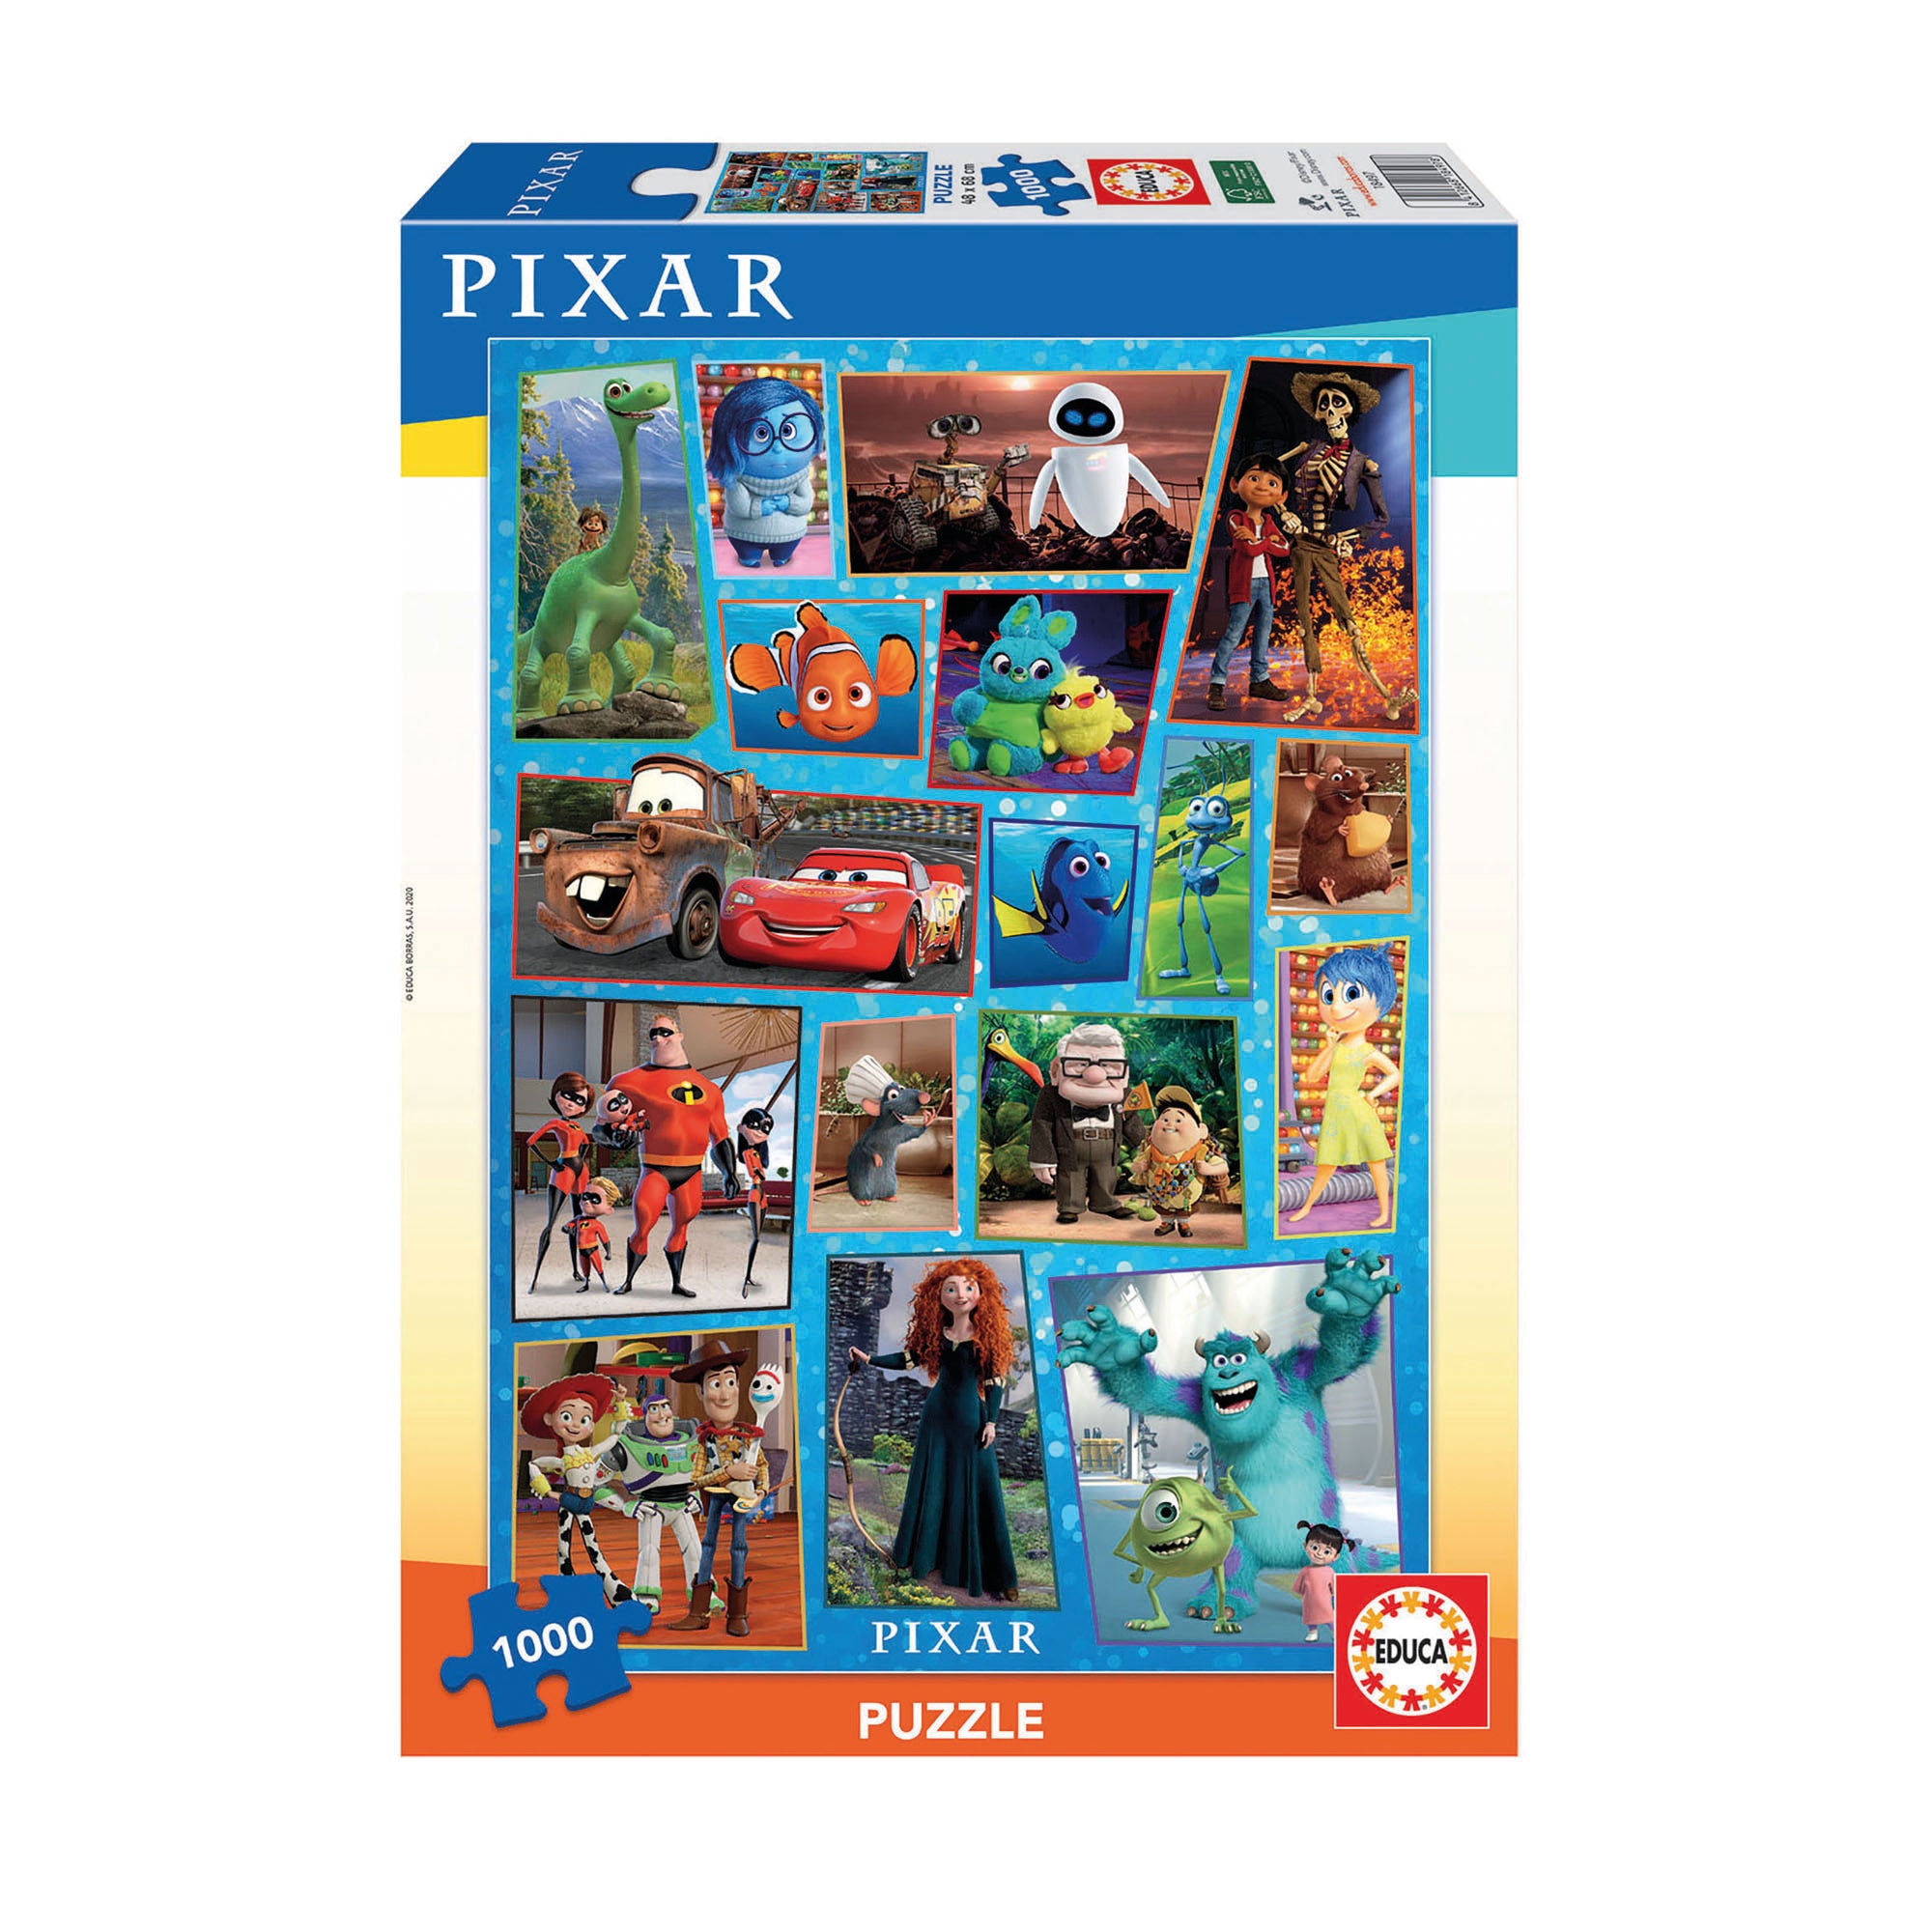 Educa Disney Pixar 1000 Piece Puzzle